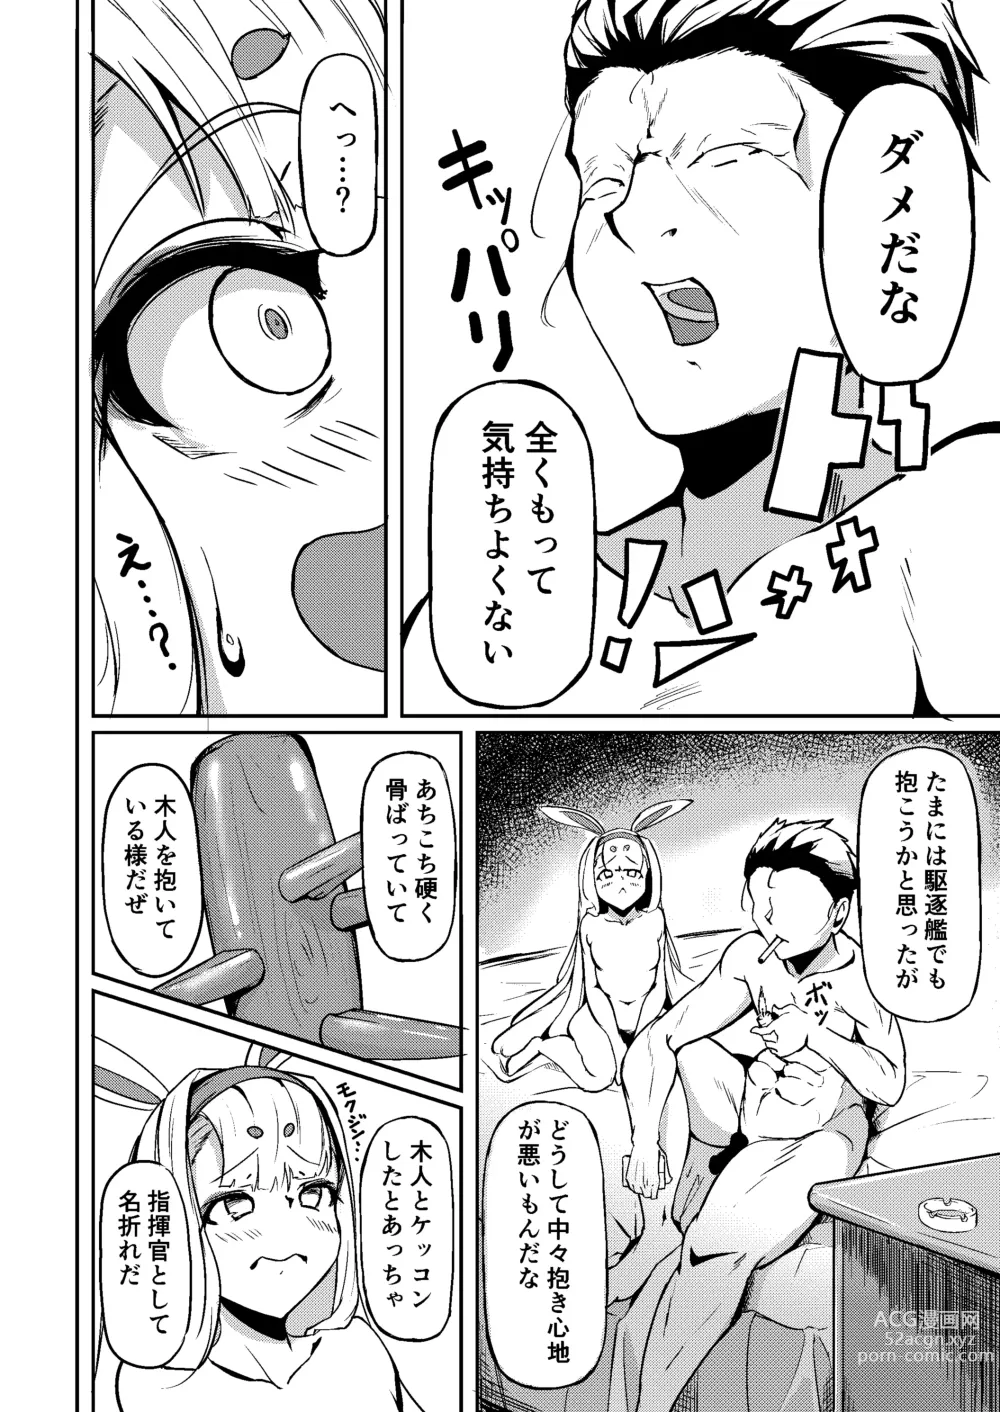 Page 3 of doujinshi Shimakaze?